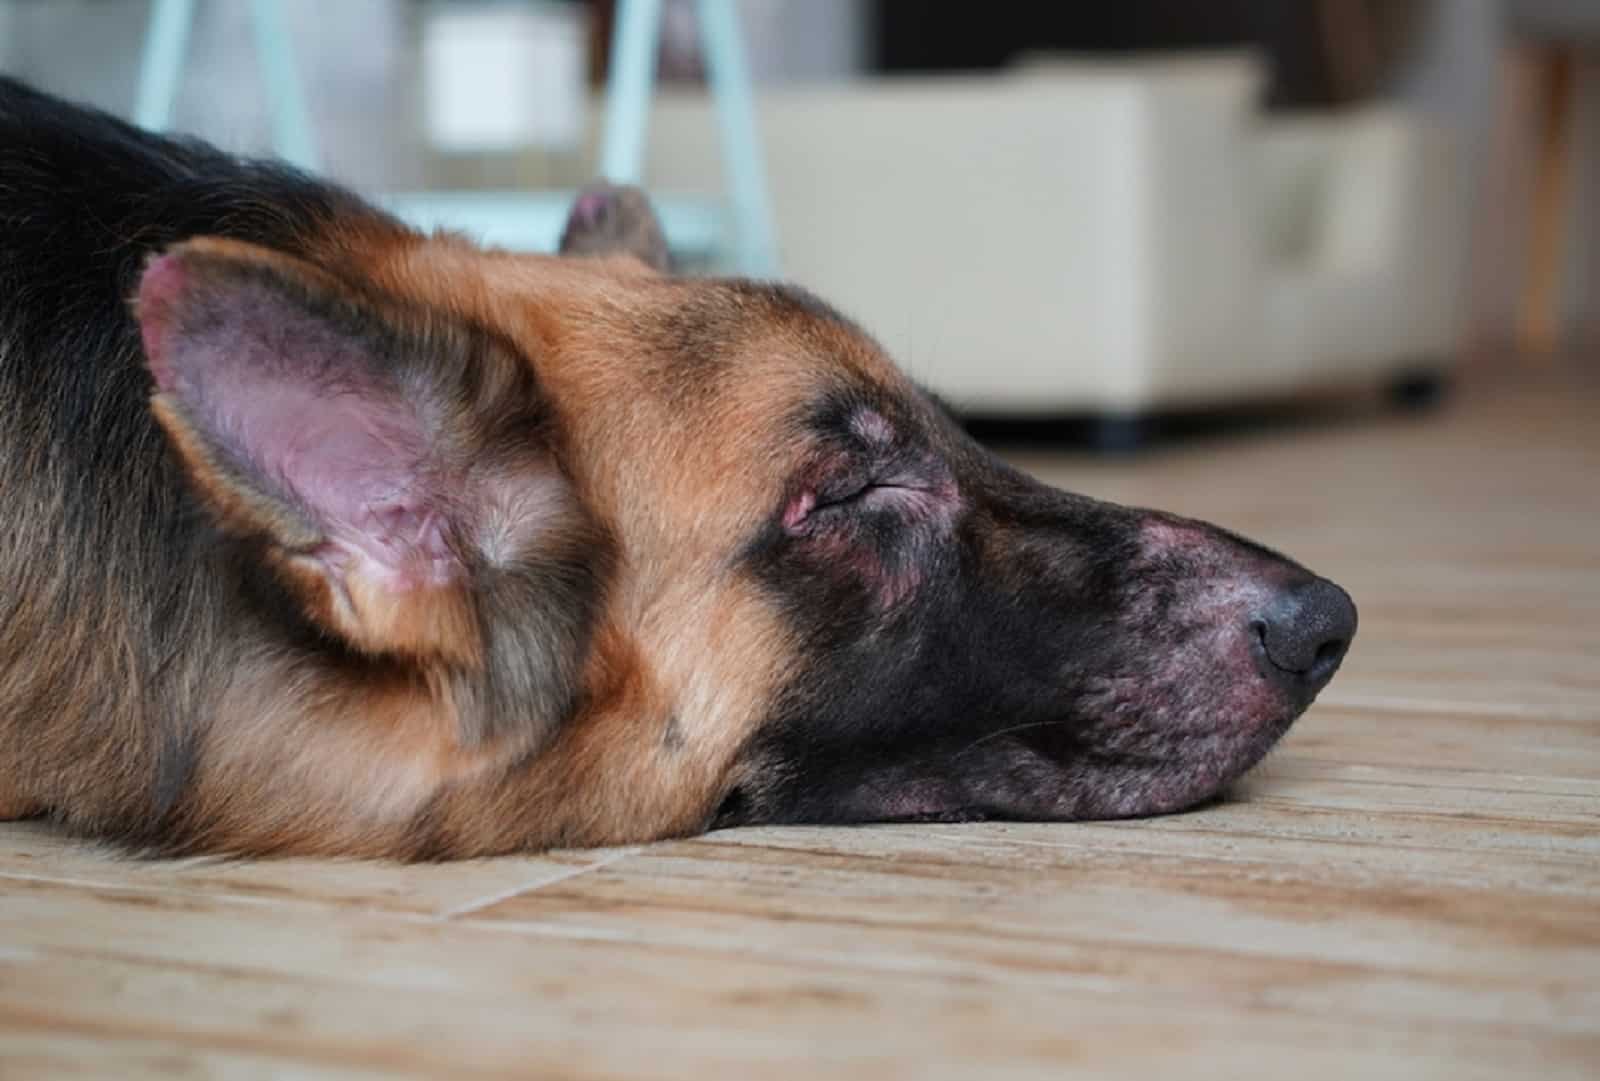 german shepherd dog lying on the floor losing hair on his face